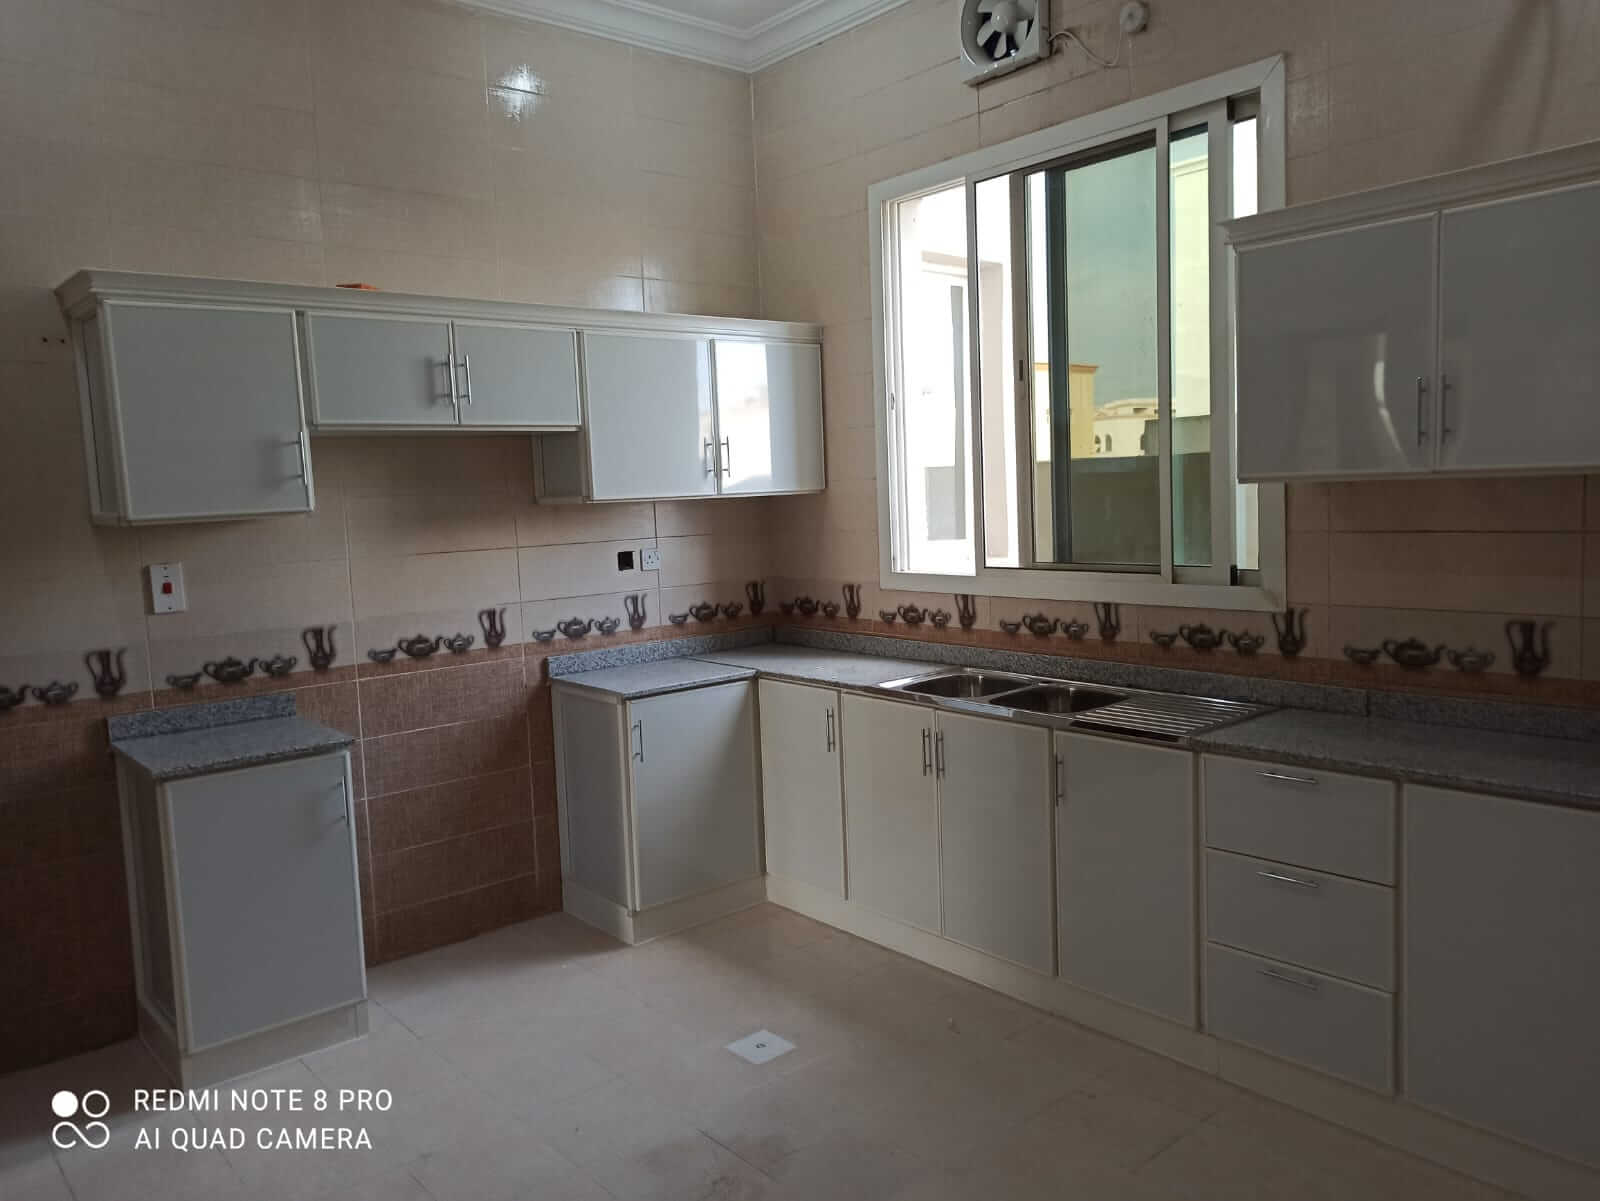 kitchen cabinet installation in qatar